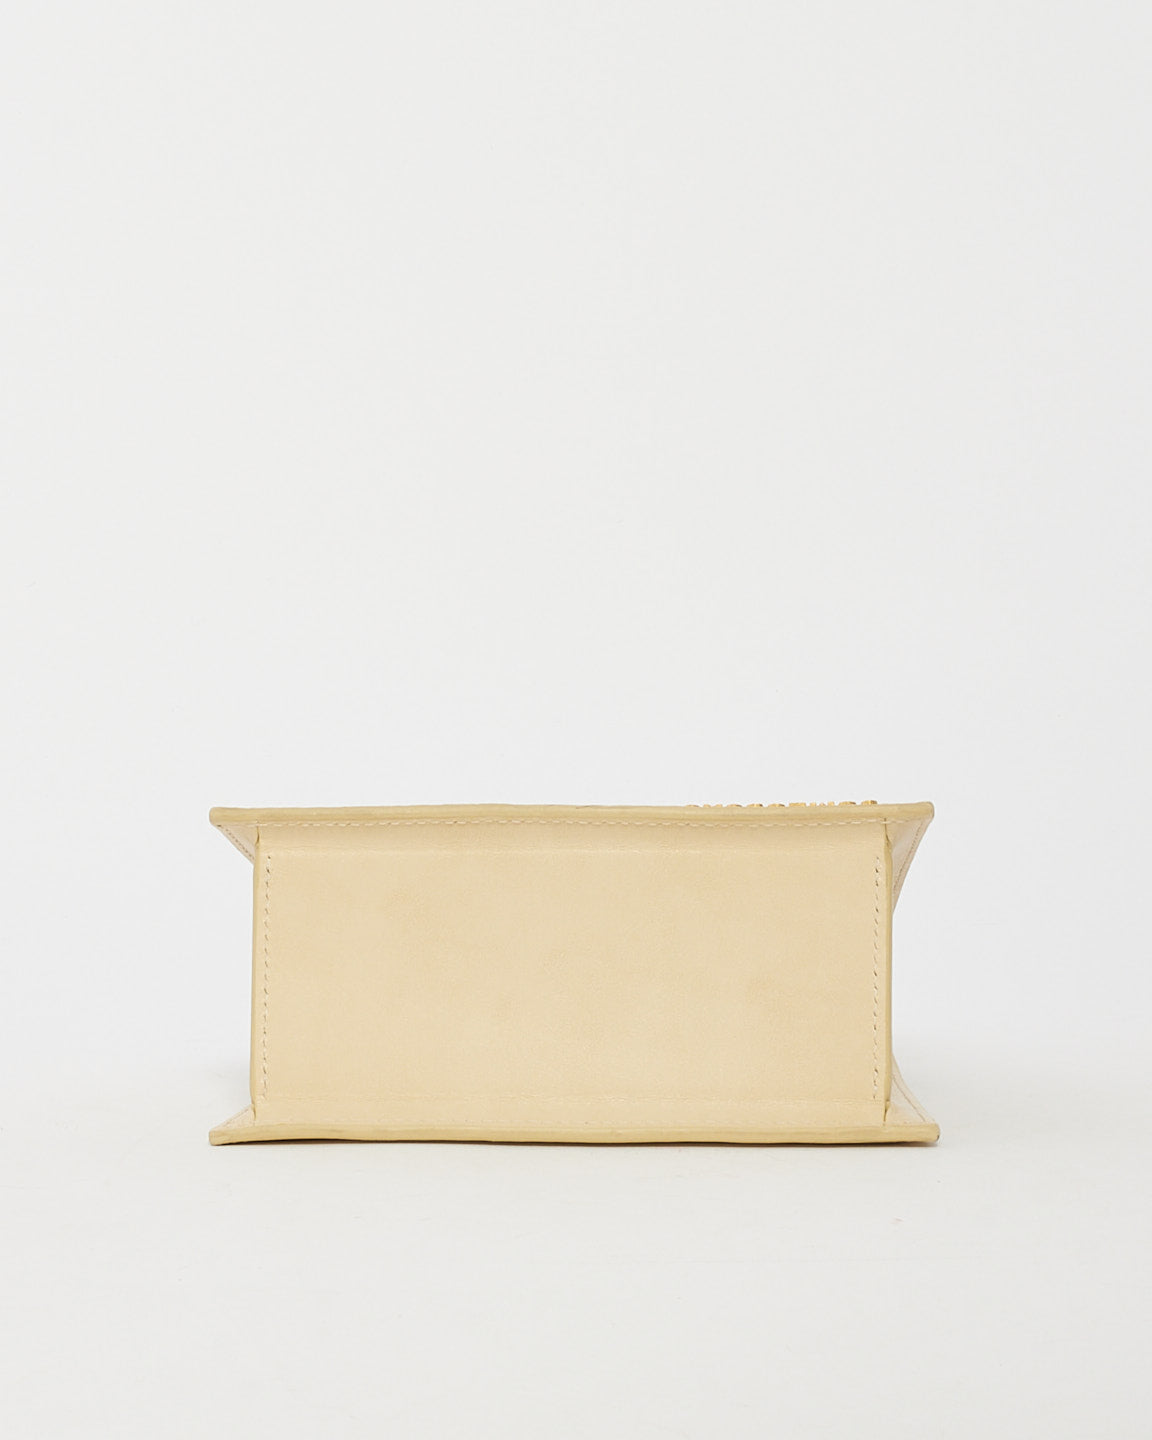 Jacquemus Cream Leather 'Le Chiquito Nœud' Bag